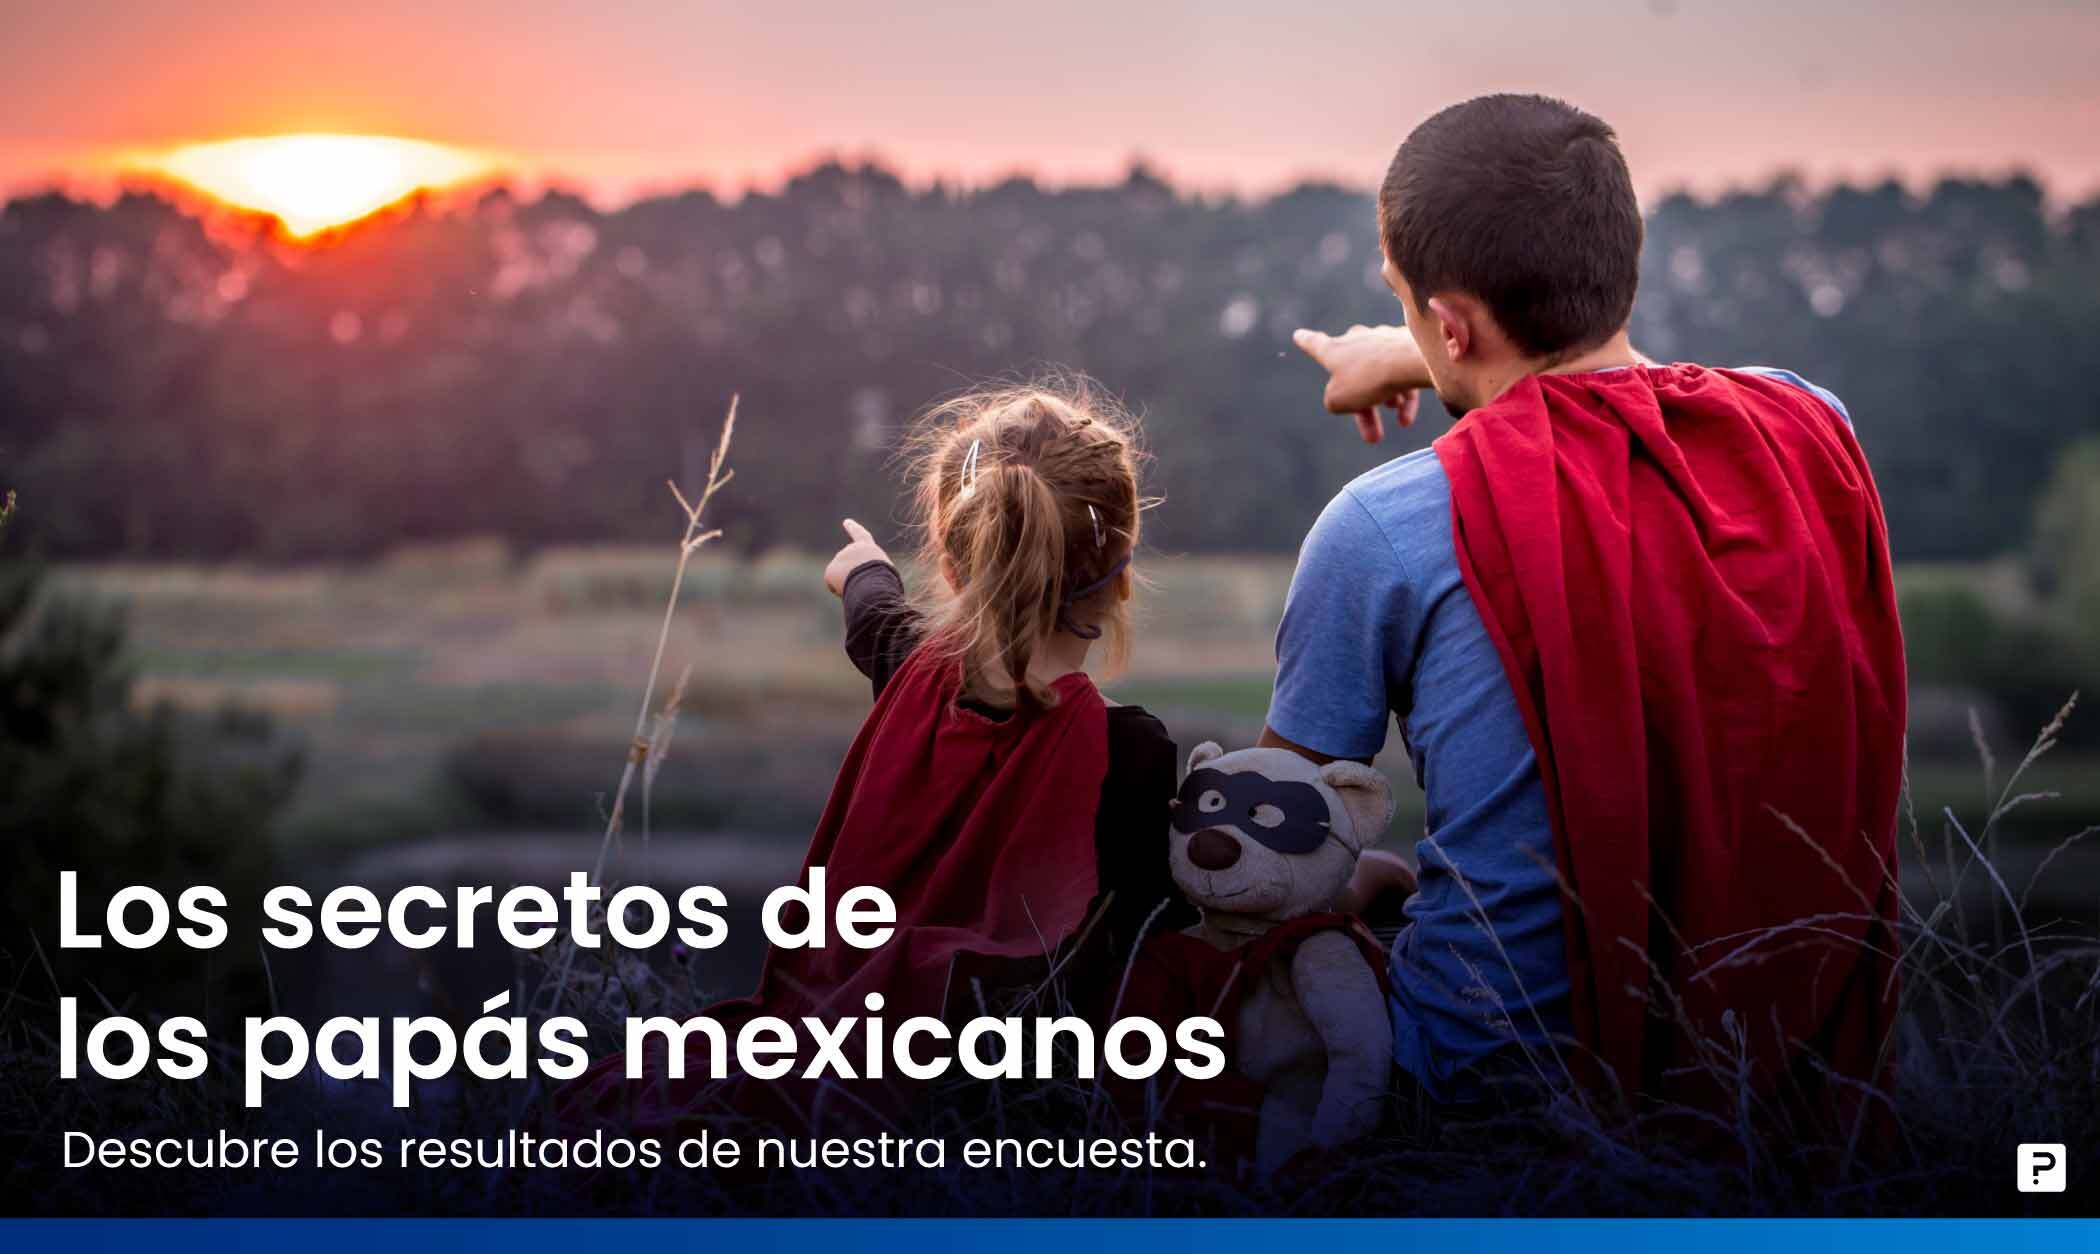 Encuesta del Día del Padre: Descubre los superpoderes y secretos de los papás mexicanos